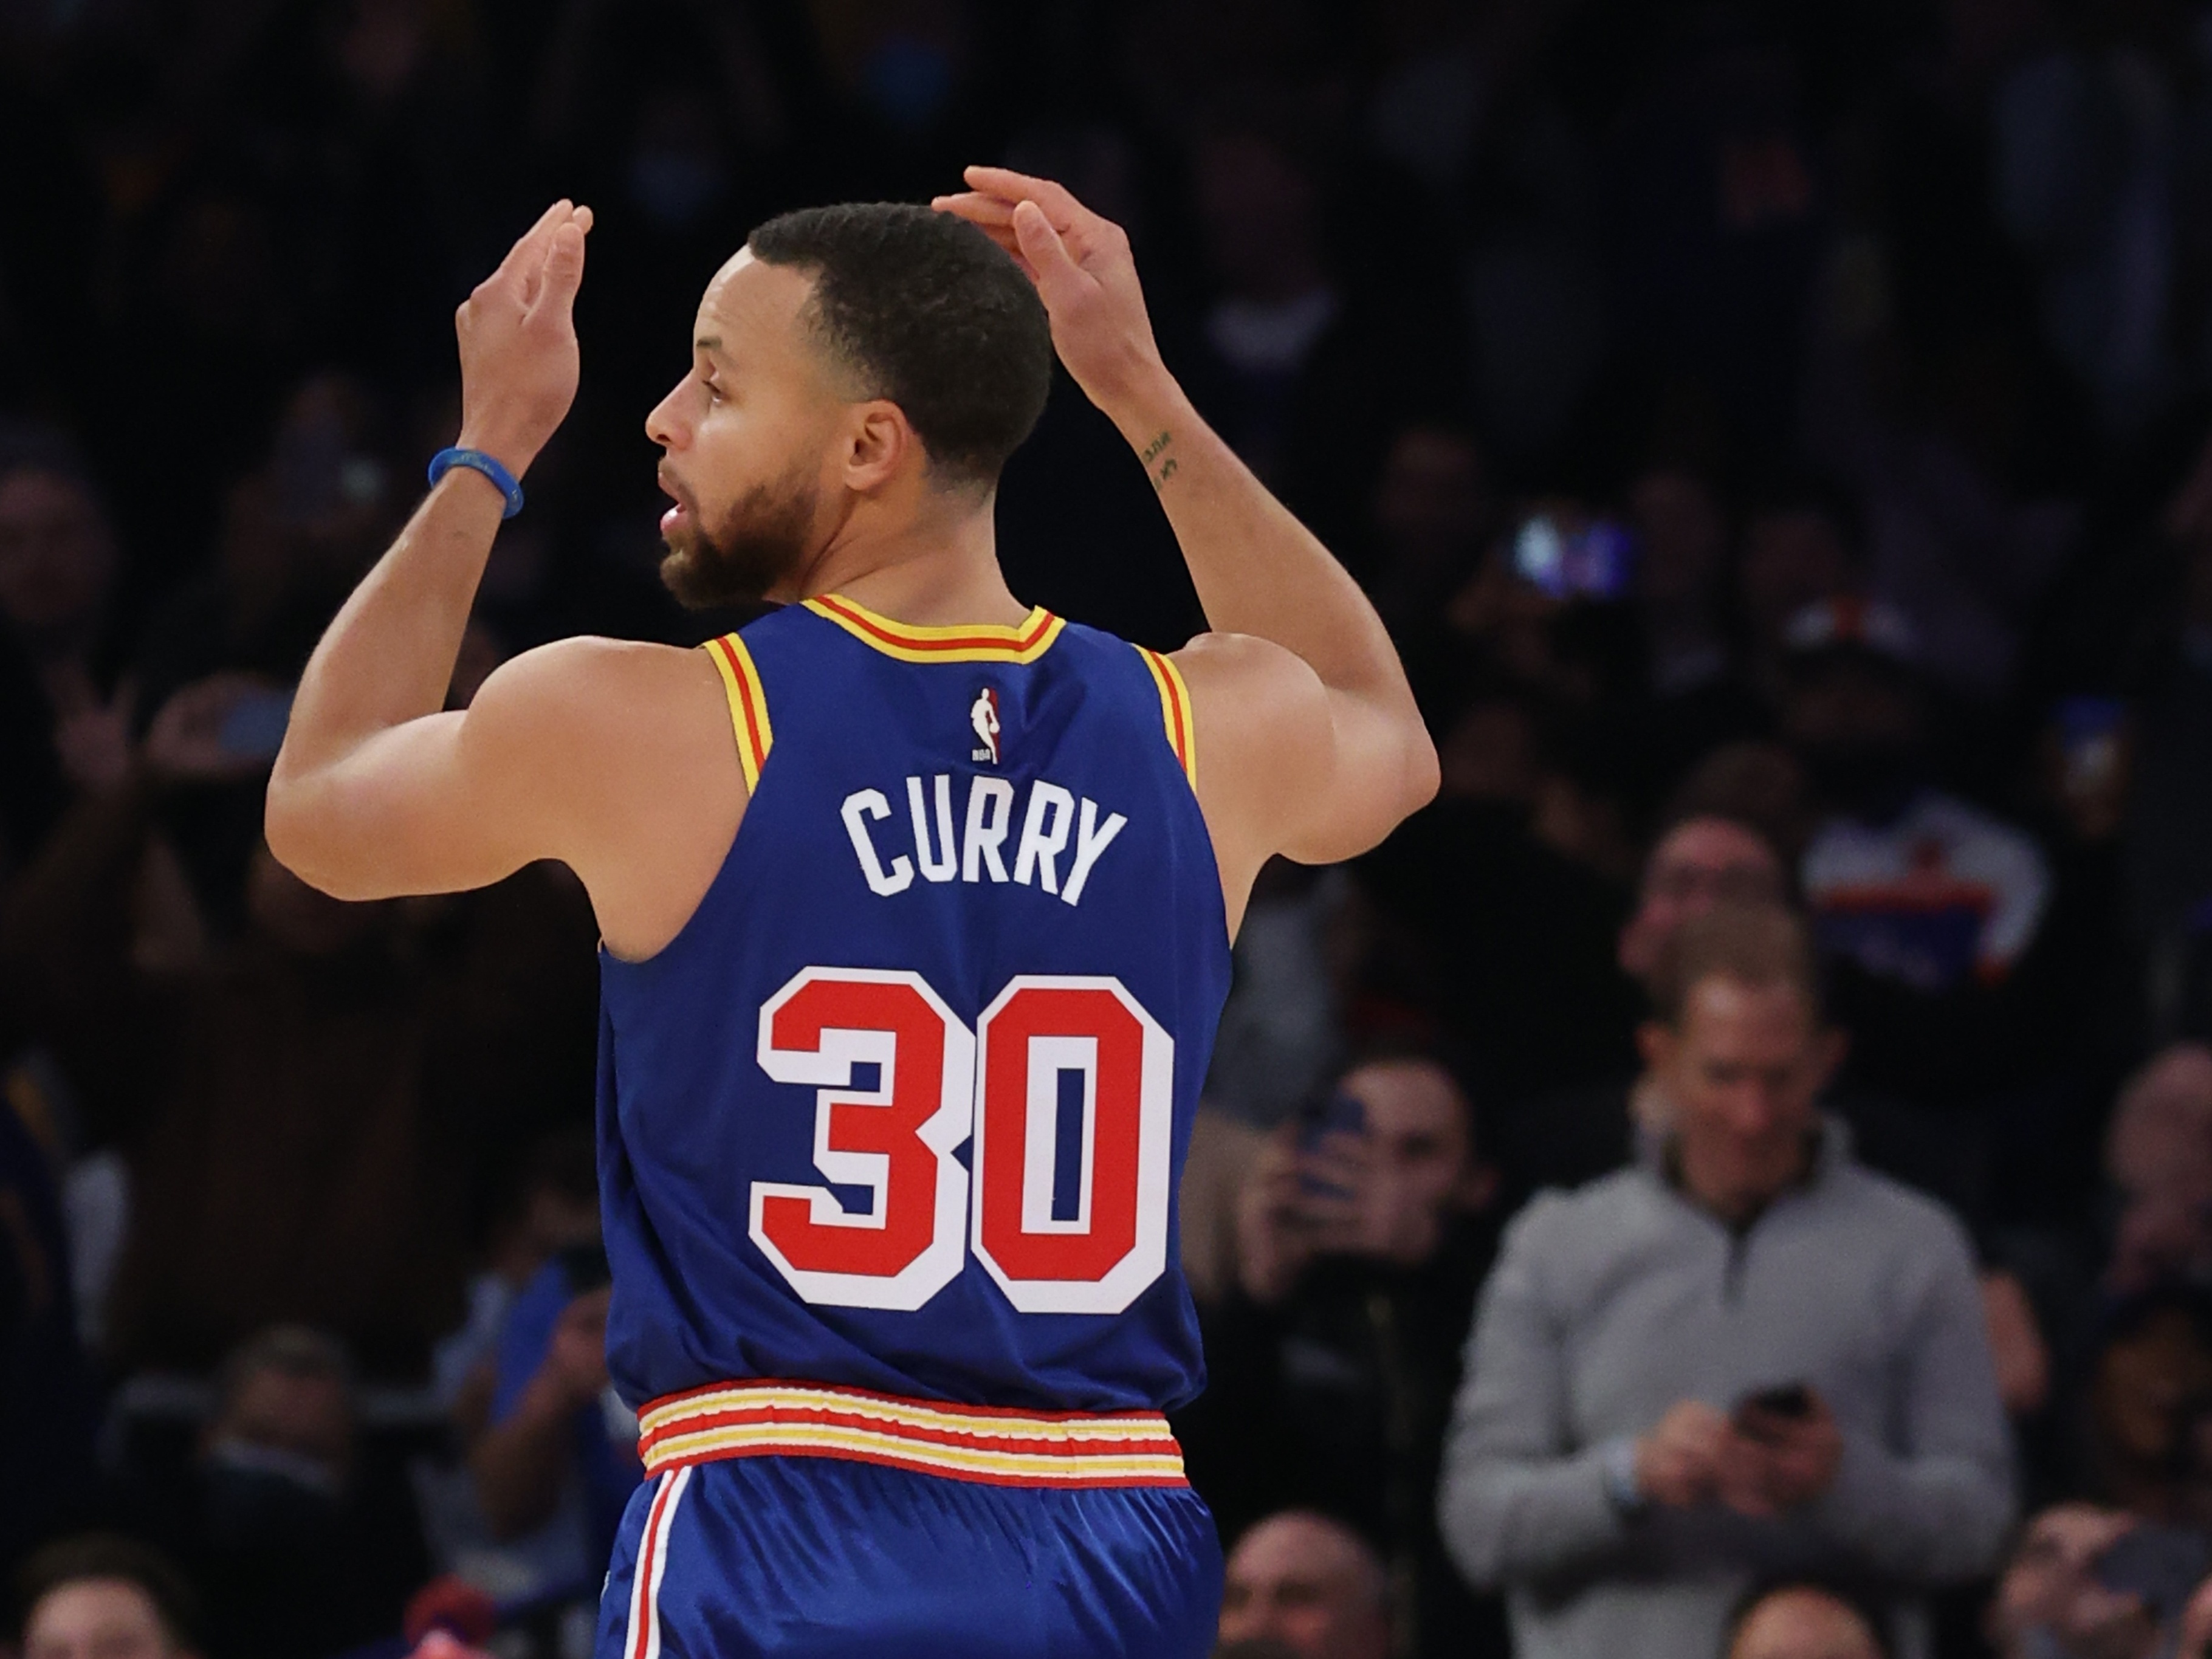 Grande exibição de Curry volta a empatar a final da NBA